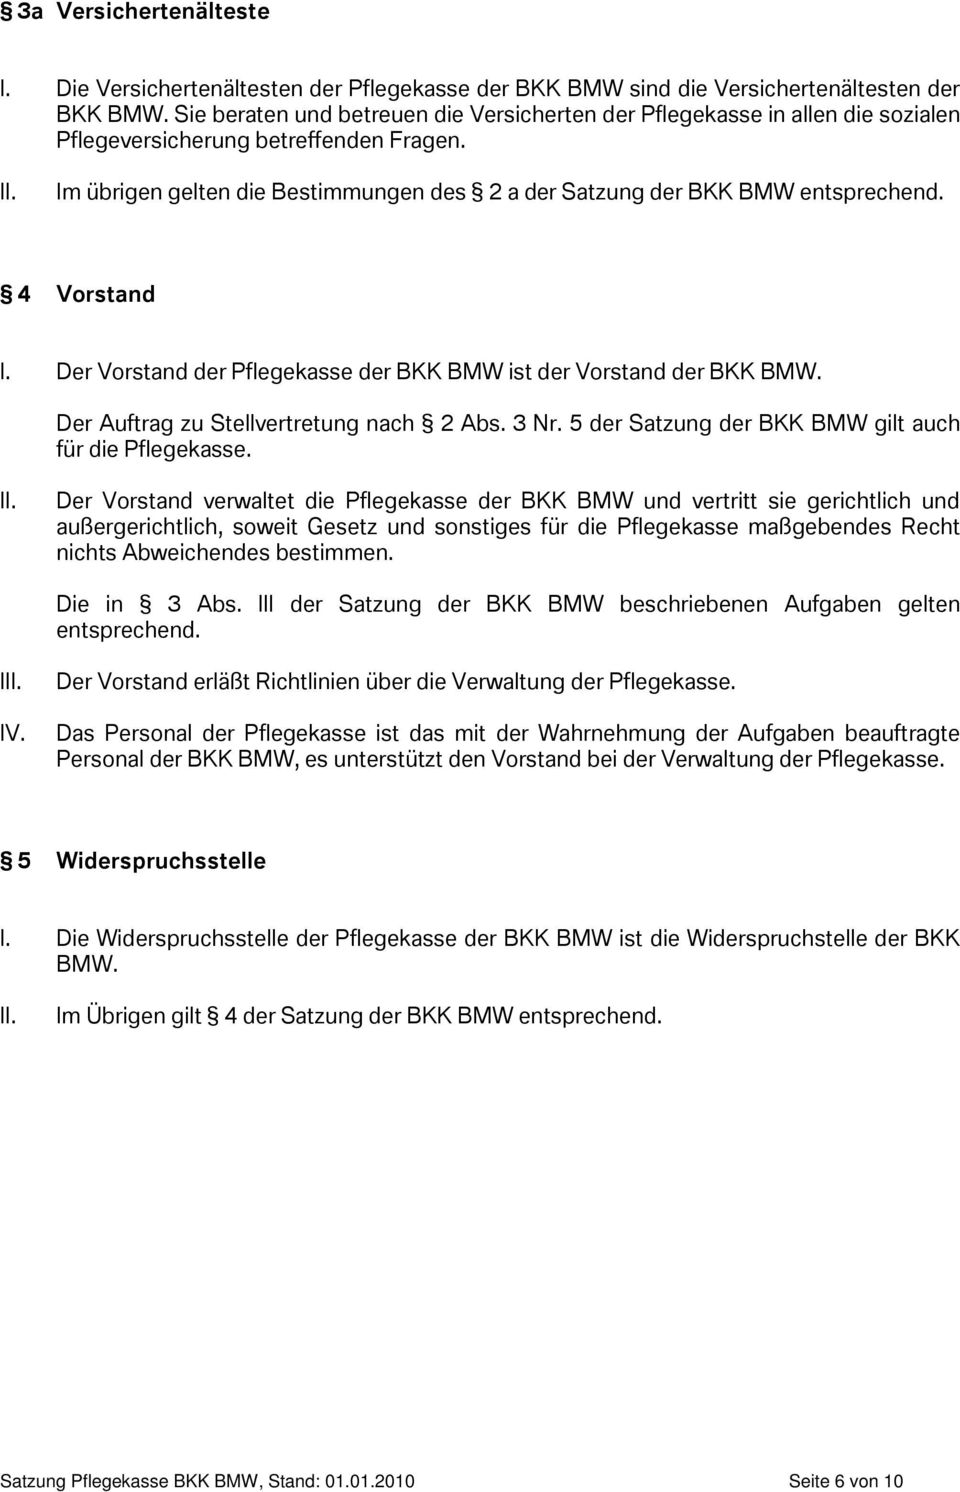 4 Vorstand I. Der Vorstand der Pflegekasse der BKK BMW ist der Vorstand der BKK BMW. Der Auftrag zu Stellvertretung nach 2 Abs. 3 Nr. 5 der Satzung der BKK BMW gilt auch für die Pflegekasse.